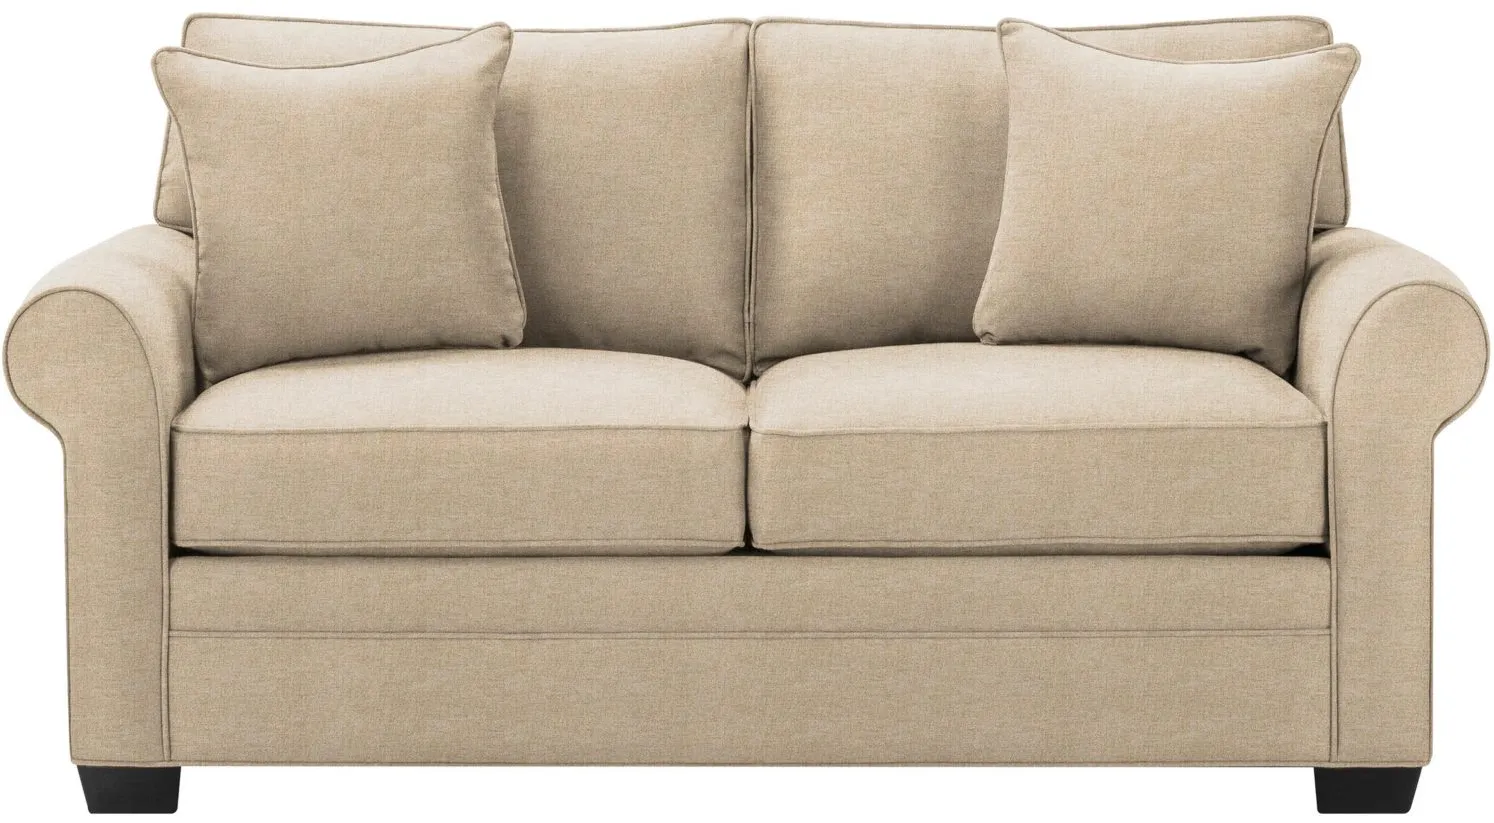 Glendora Full Sleeper Sofa in Santa Rosa Linen by H.M. Richards